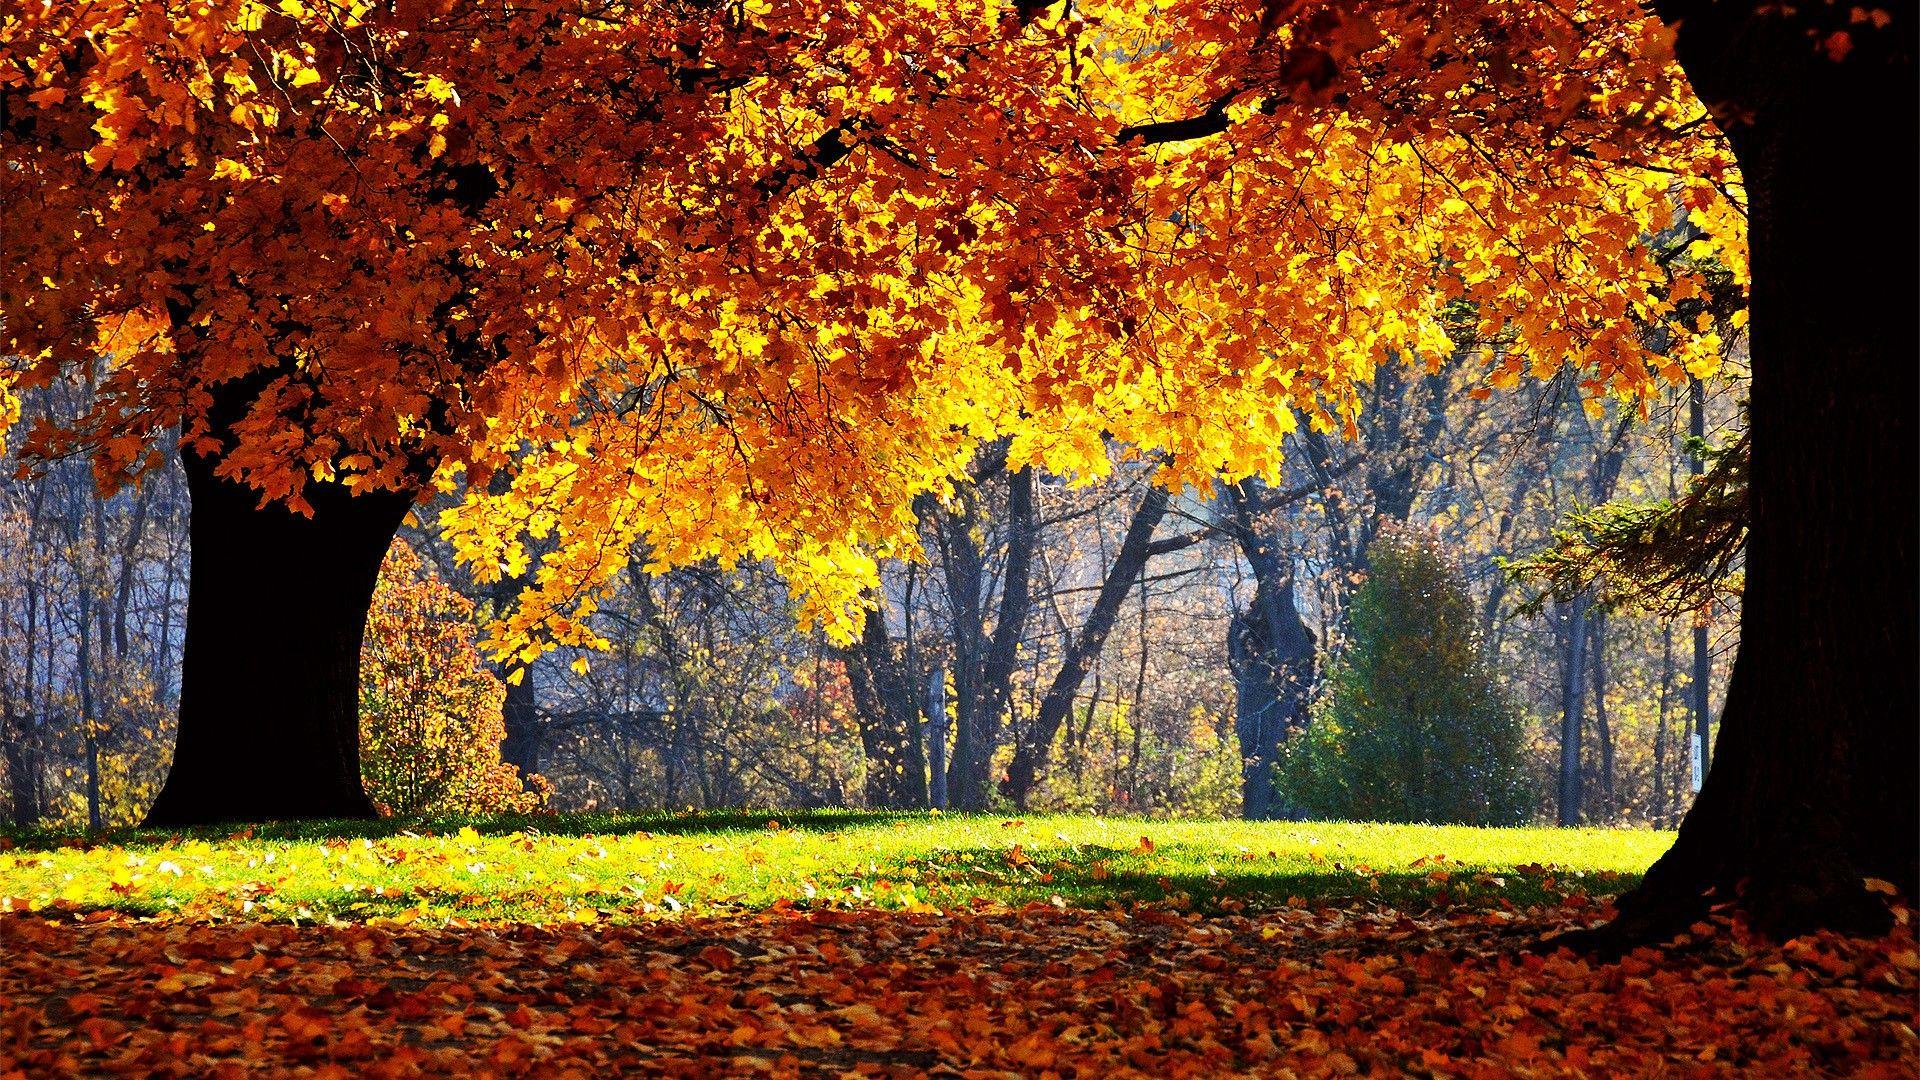 Best Autumn Wallpaper for iPhone New HD Autumn Wallpaper ·â